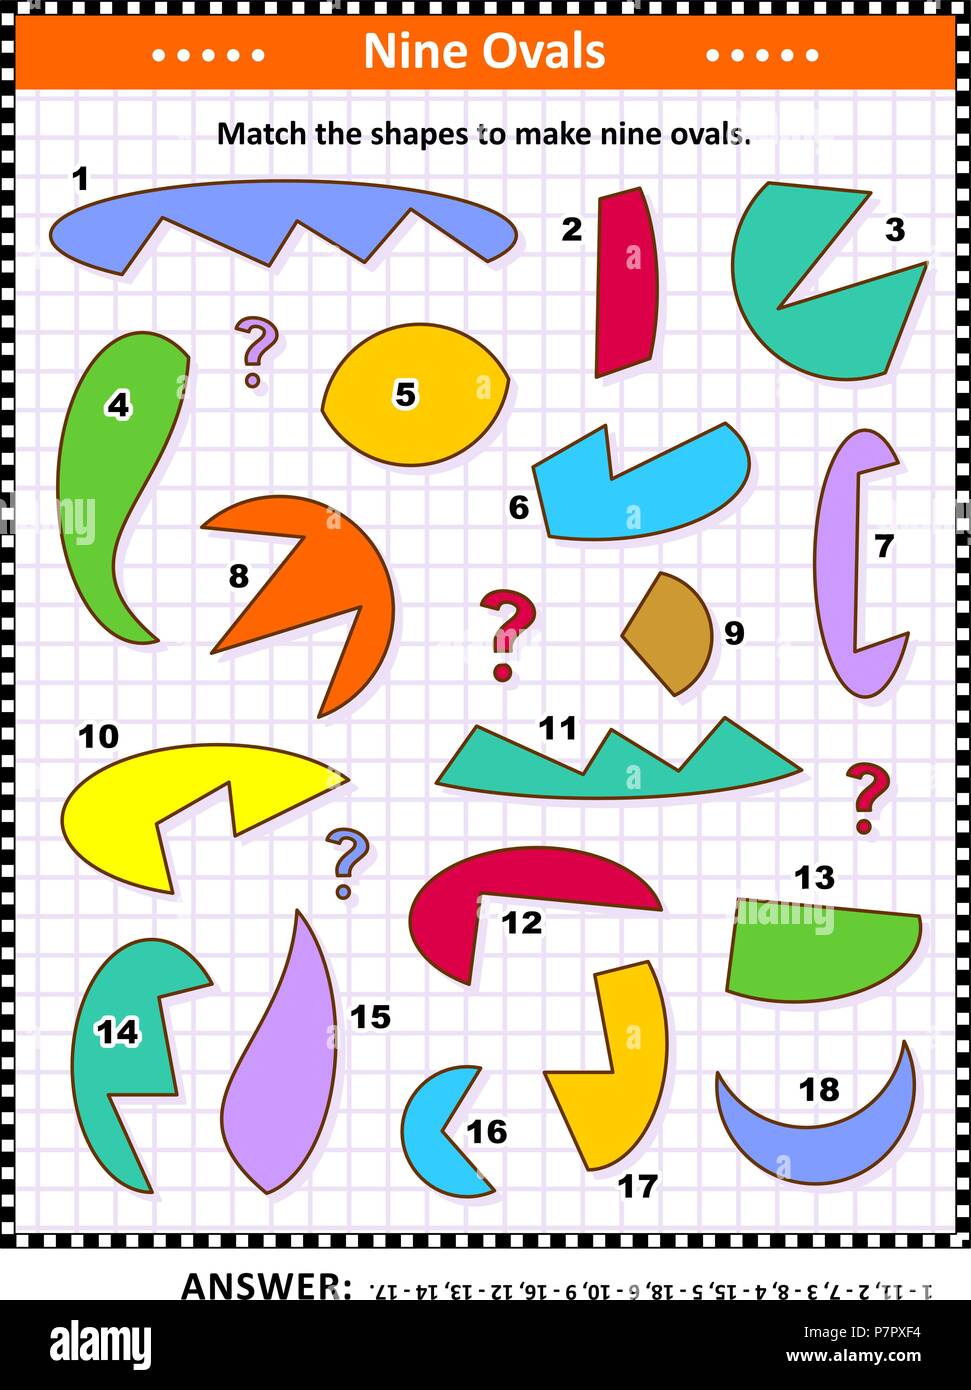 IQ e spaziale delle competenze matematiche di formazione visual puzzle: corrispondono le forme per rendere nove ovali o ellissi. Risposta inclusa. Illustrazione Vettoriale